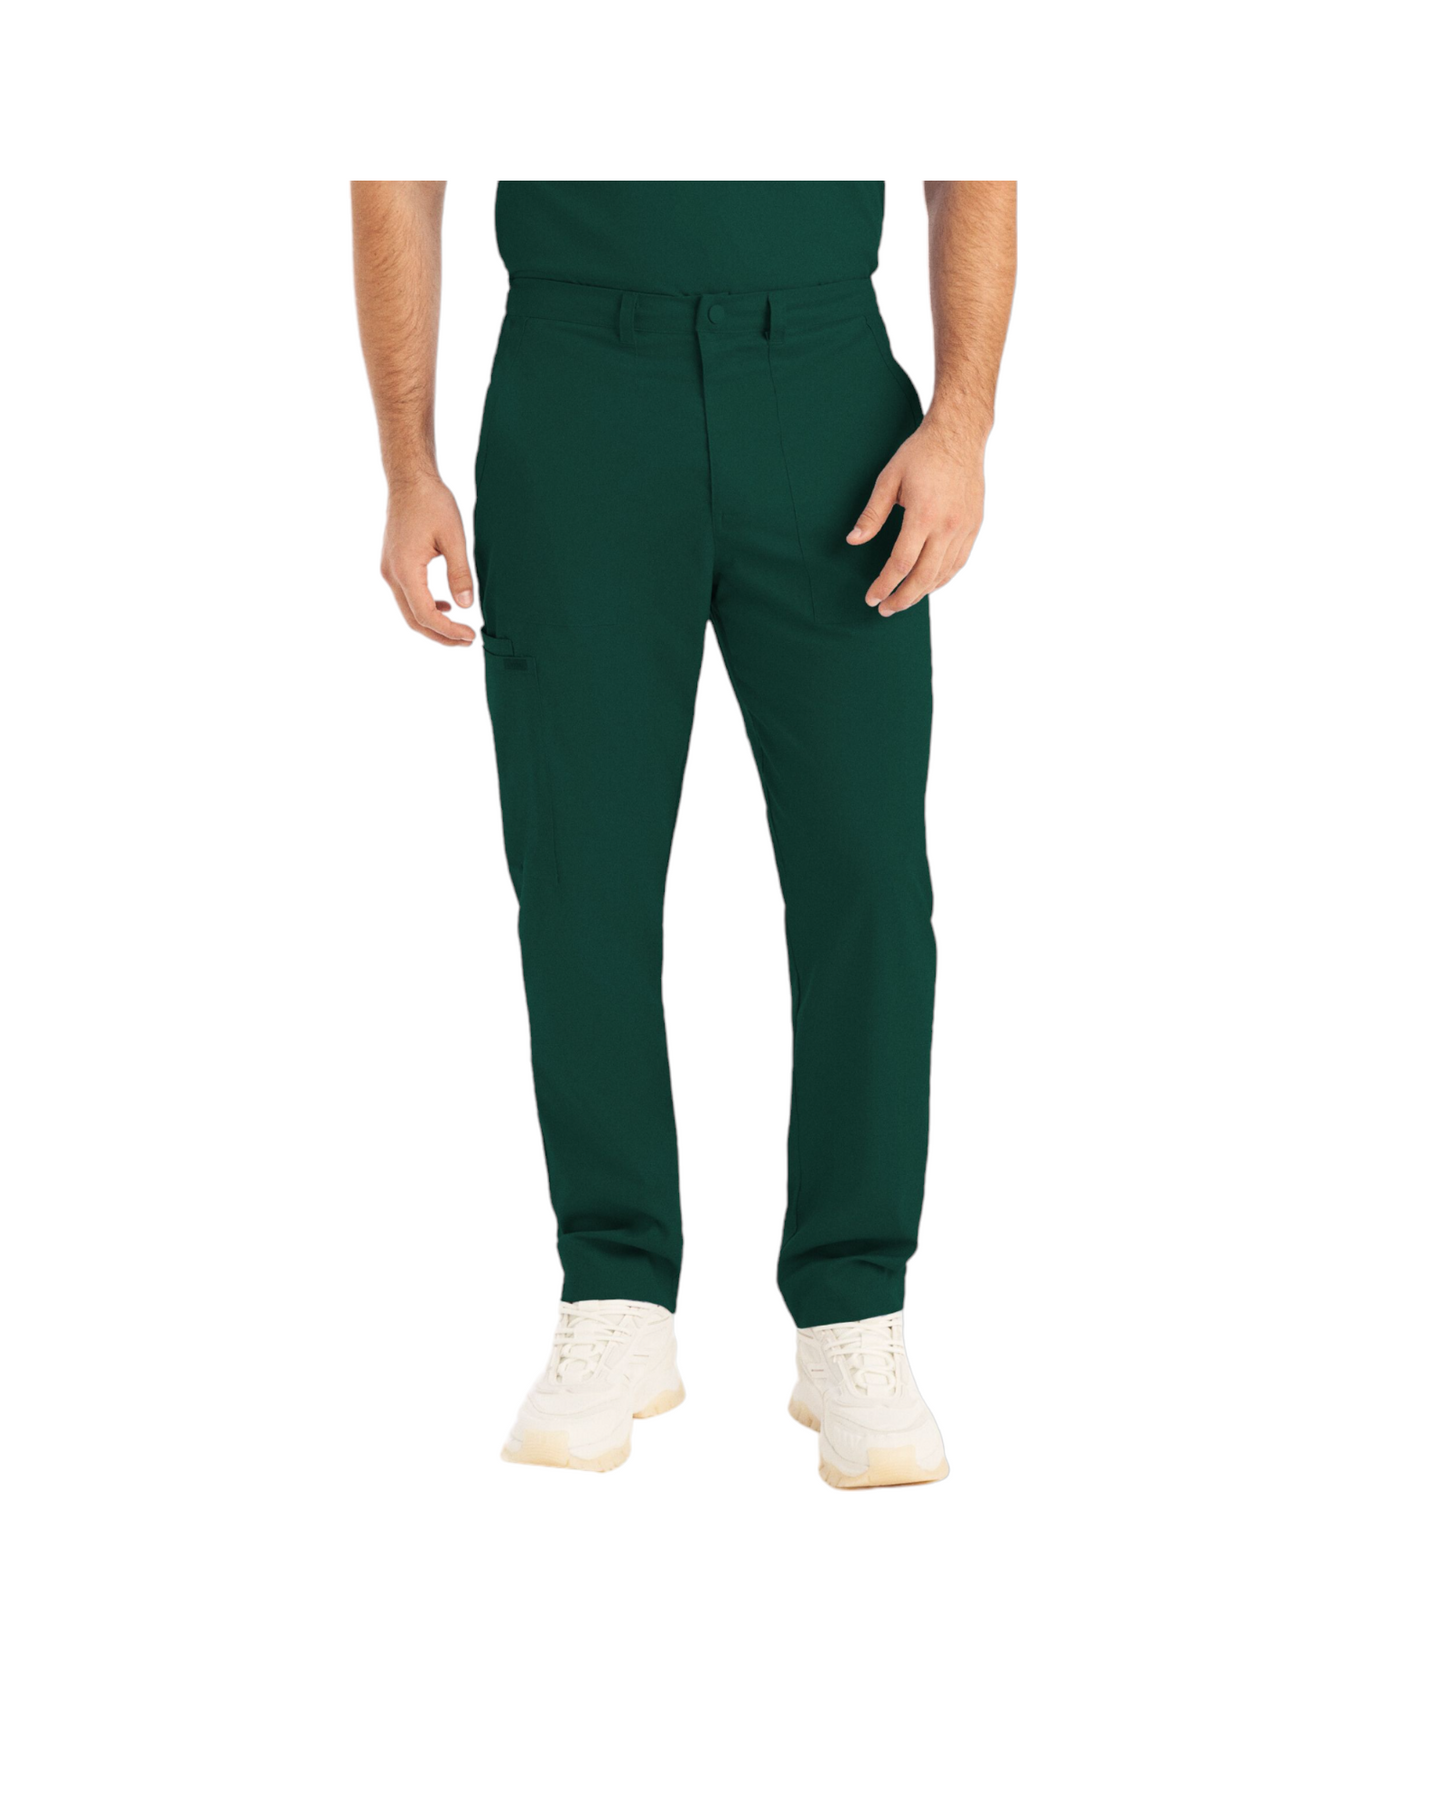 Pantalon jogger pour hommes Landau Proflex #LB408 avec braguette zippée avec élastique dissimulé, cordon de serrage, 2 poches cargo plaqué dont une avec cordon élastique, 2 poches avant et 2 poches arrière., couleur Vert Forêt.